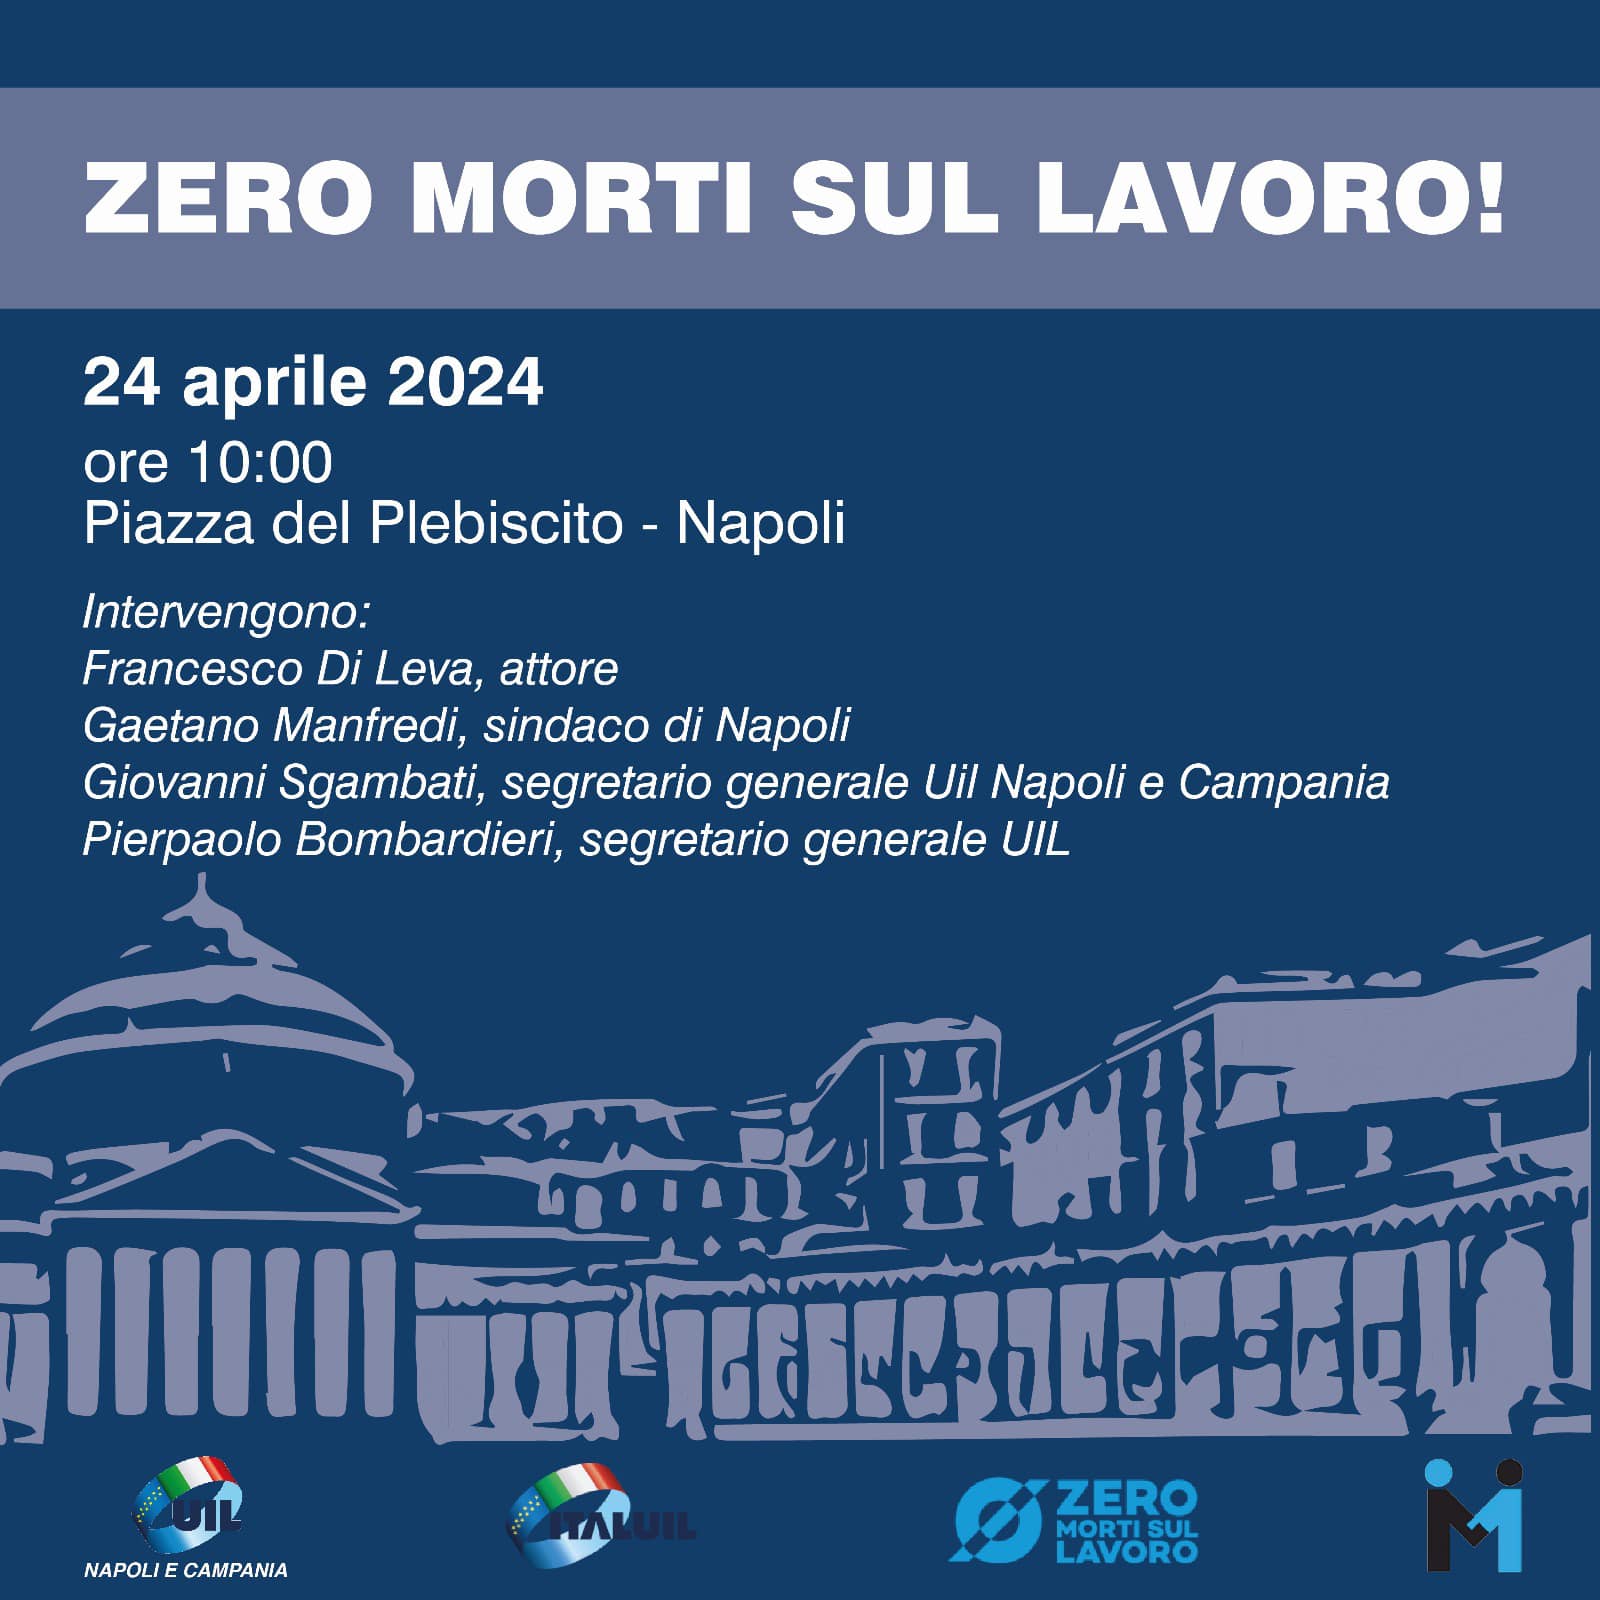 La Uil domani, 24 aprile, sarà in Piazza Plebiscito, a Napoli, per dire basta morti sul lavoro!